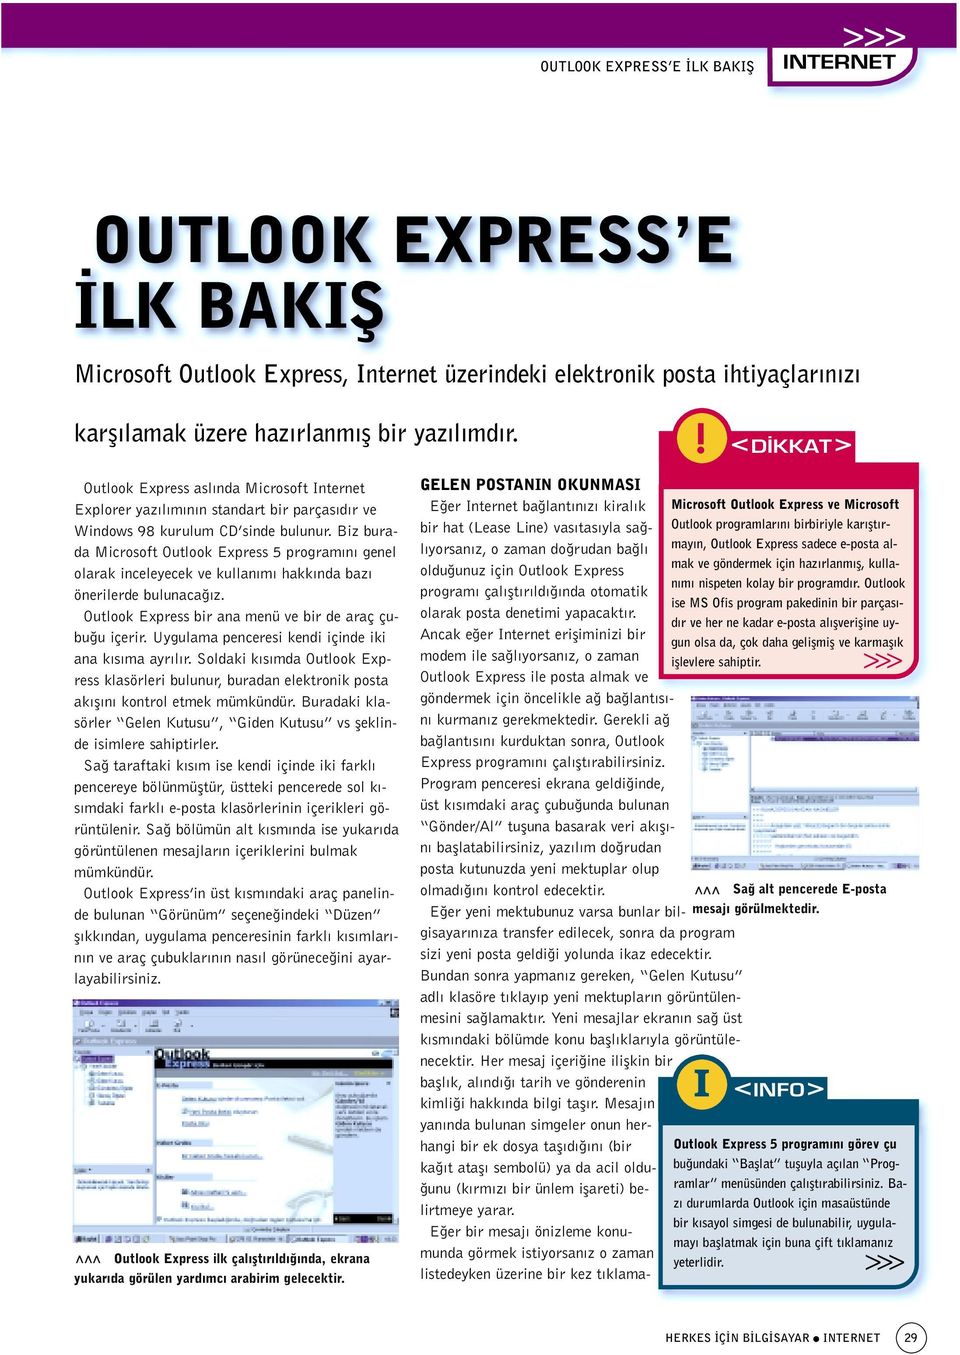 Biz burada Microsoft Outlook Express 5 program n genel olarak inceleyecek ve kullan m hakk nda baz önerilerde bulunaca z. Outlook Express bir ana menü ve bir de araç çubu u içerir.